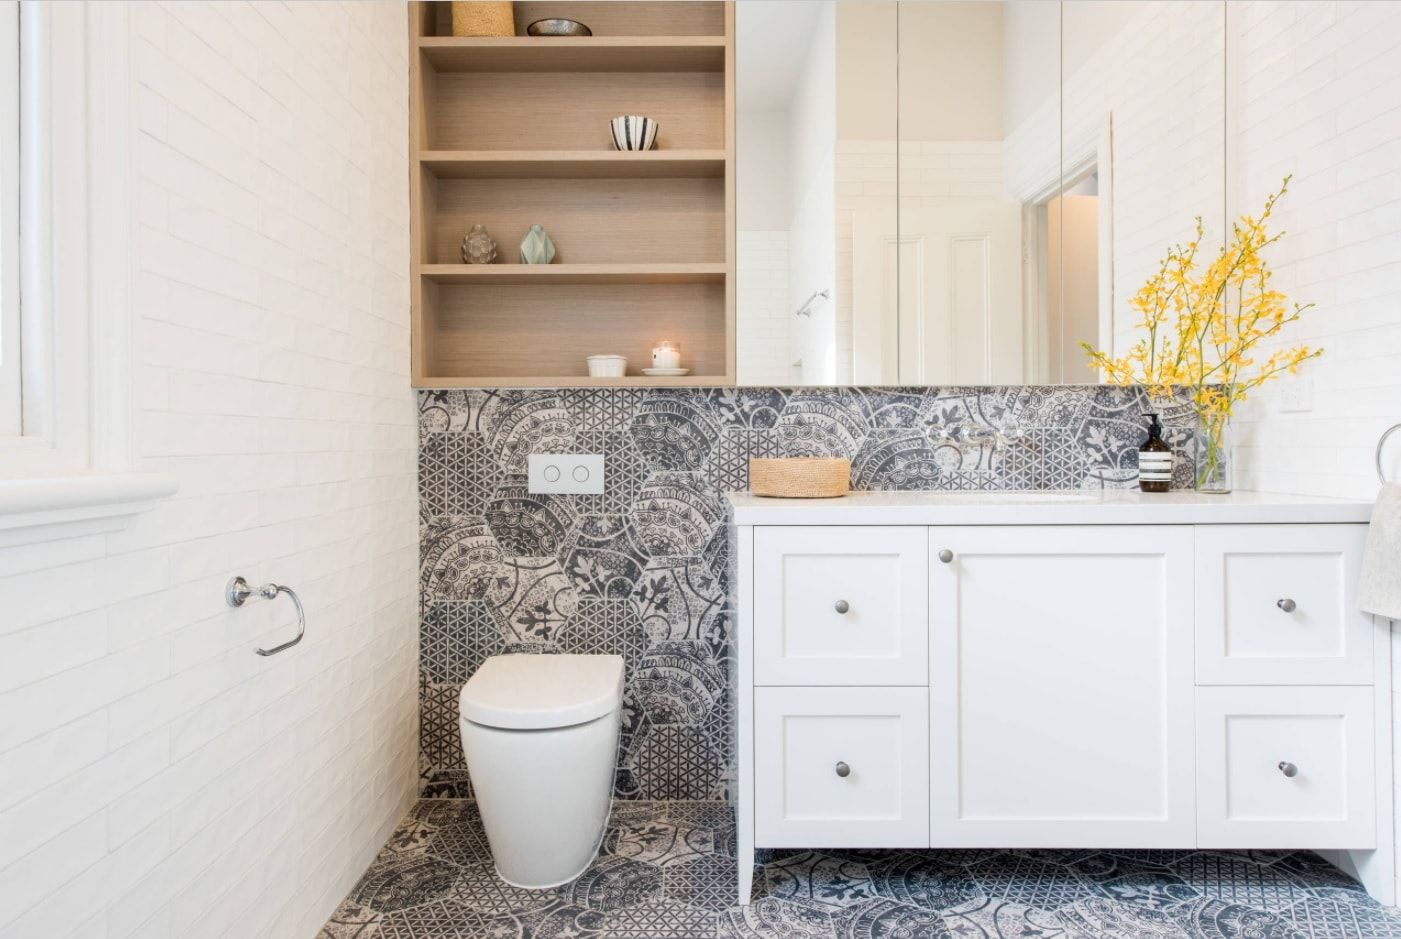 Tangier tile for exquisite bathroom interior